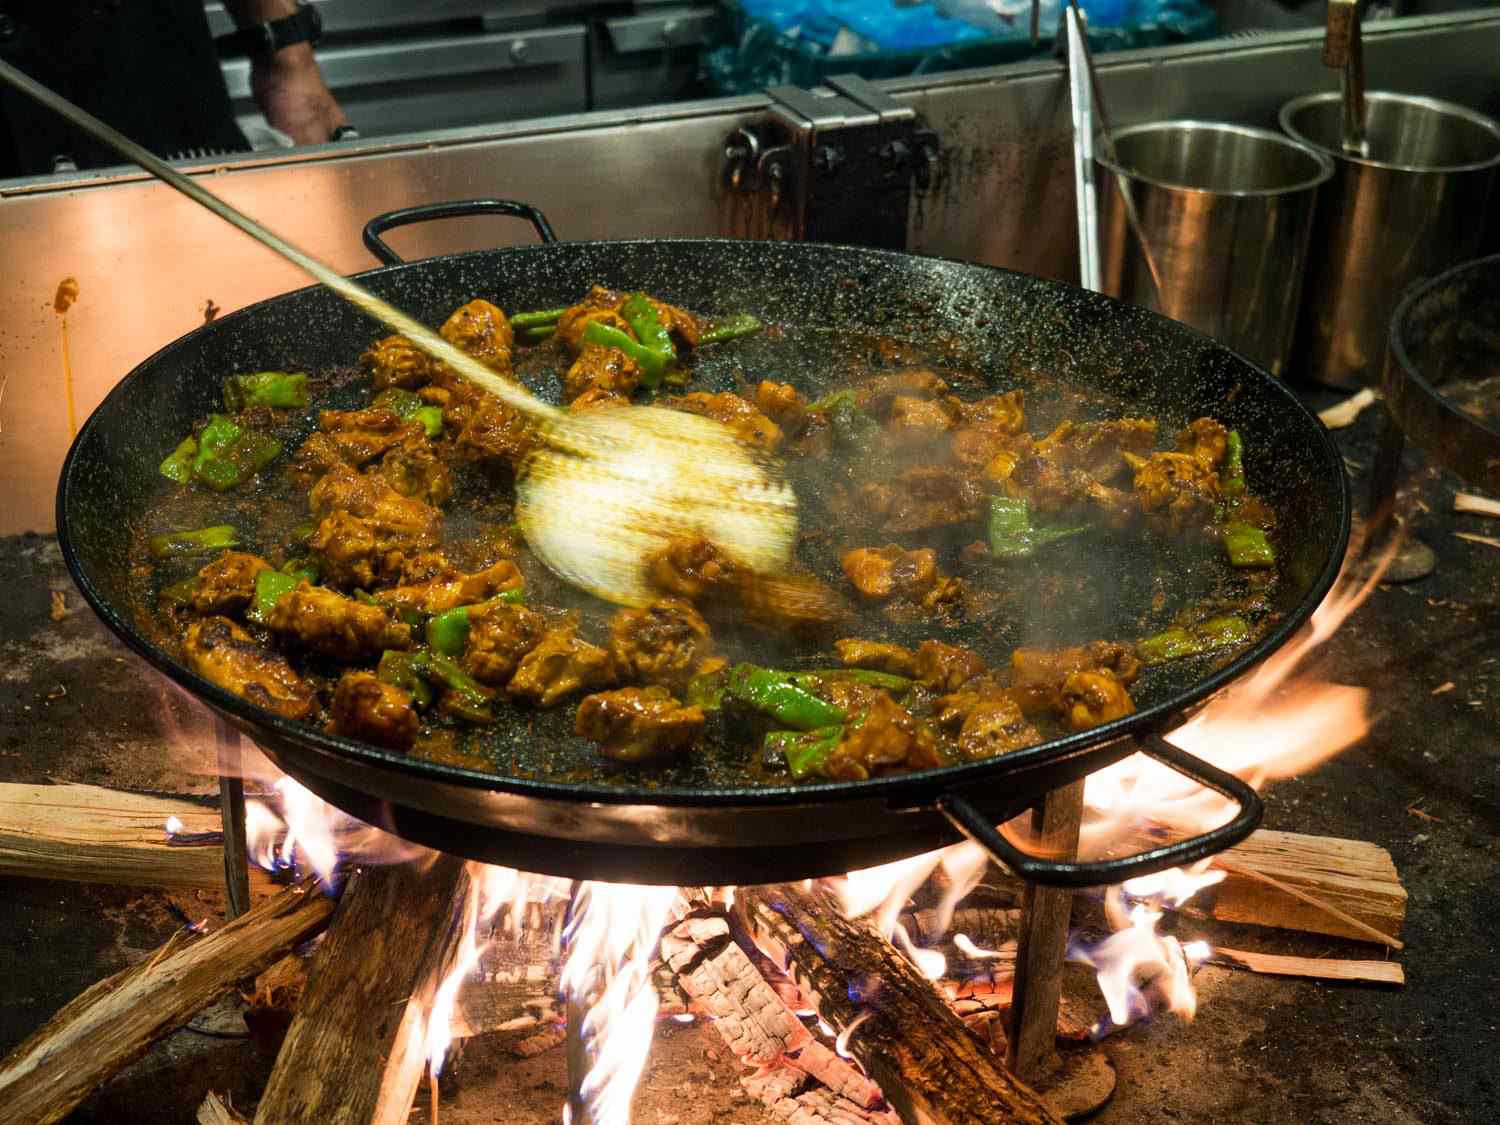 Mercado Little Spain餐厅正在烹制传统的瓦伦西亚海鲜饭:将兔肉、鸡肉和罗马豆一起硬煮至与番茄一起变成深棕色，然后加入高汤和米饭。gydF4y2Ba